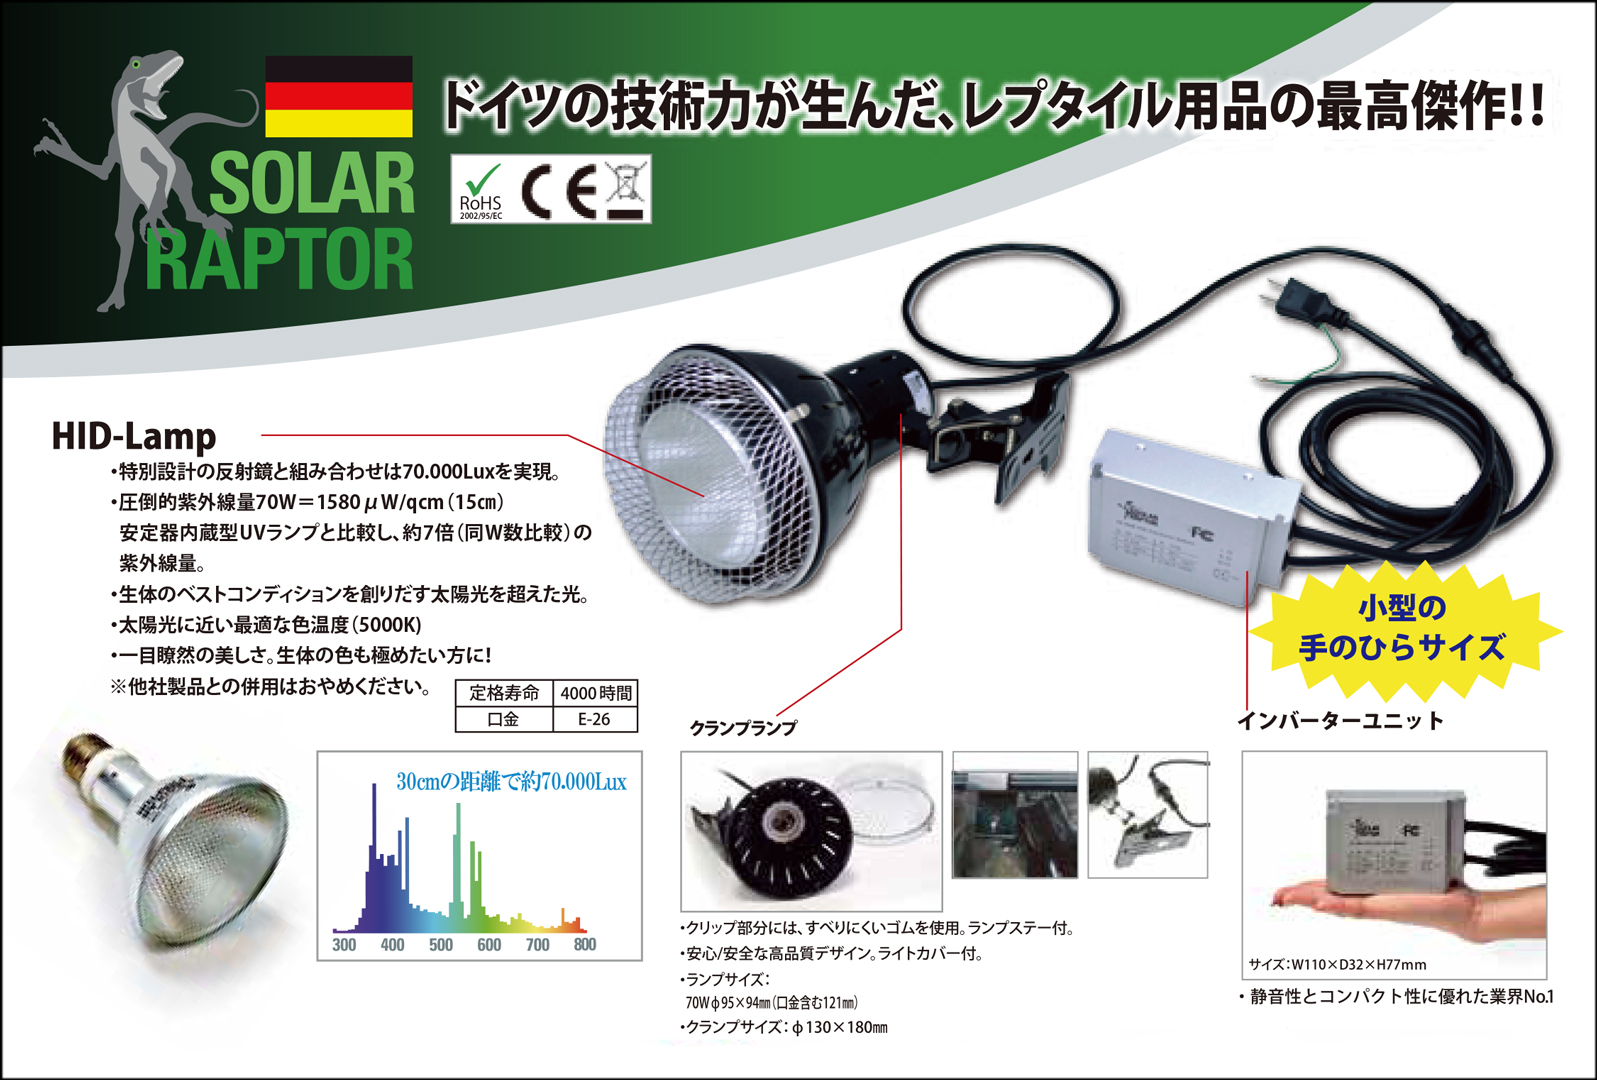 ○ ソーラーラプター HIDランプ70W 爬虫類用UVBメタハラ 消費税0円